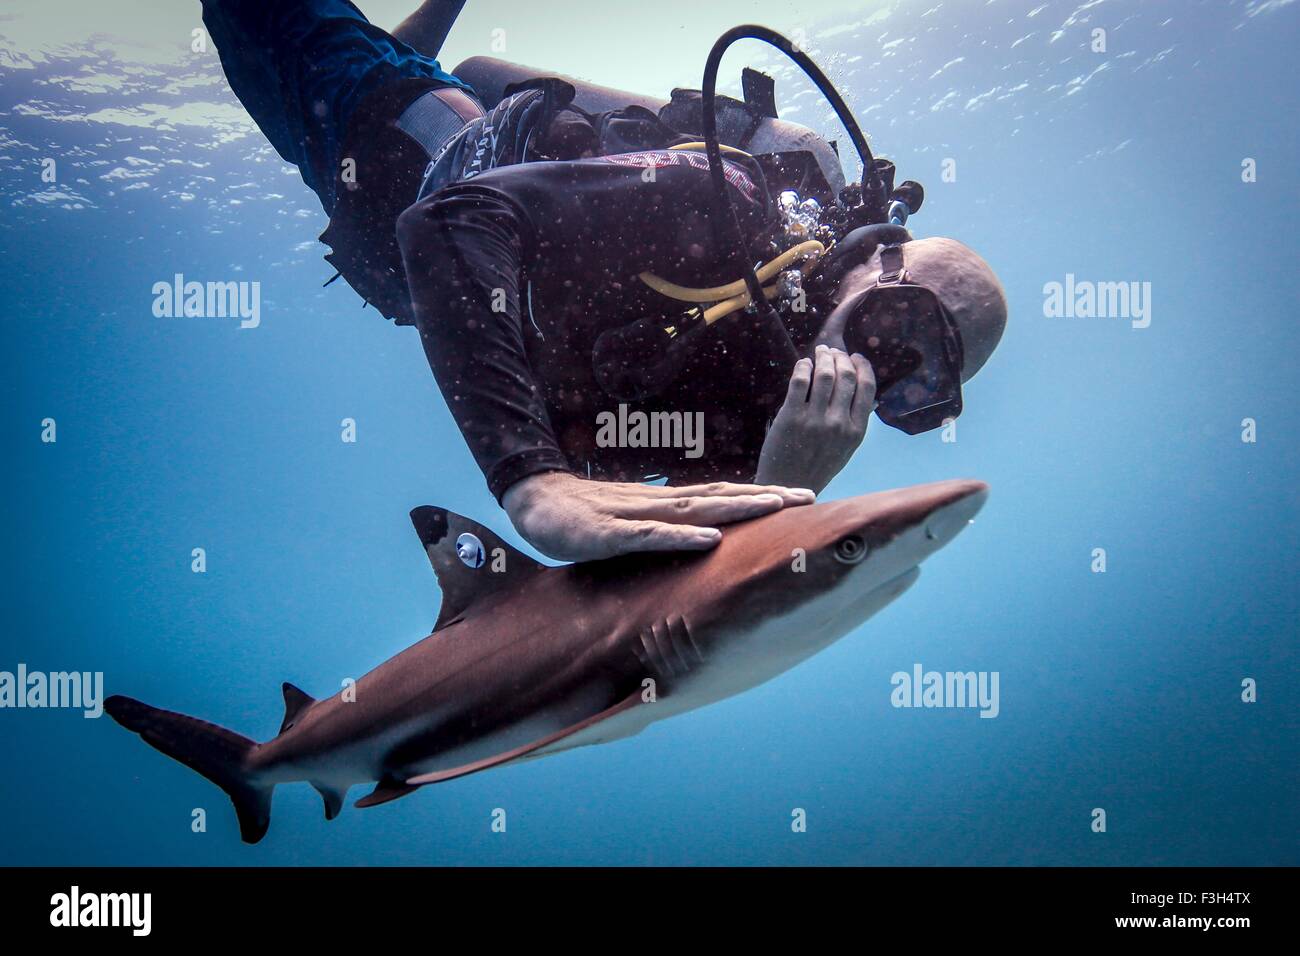 Taucher, die Freigabe einer tagged juvenile Schwarzspitzen-Riffhaie, nachdem es markiert wurde, Lombok, Indonesien Stockfoto